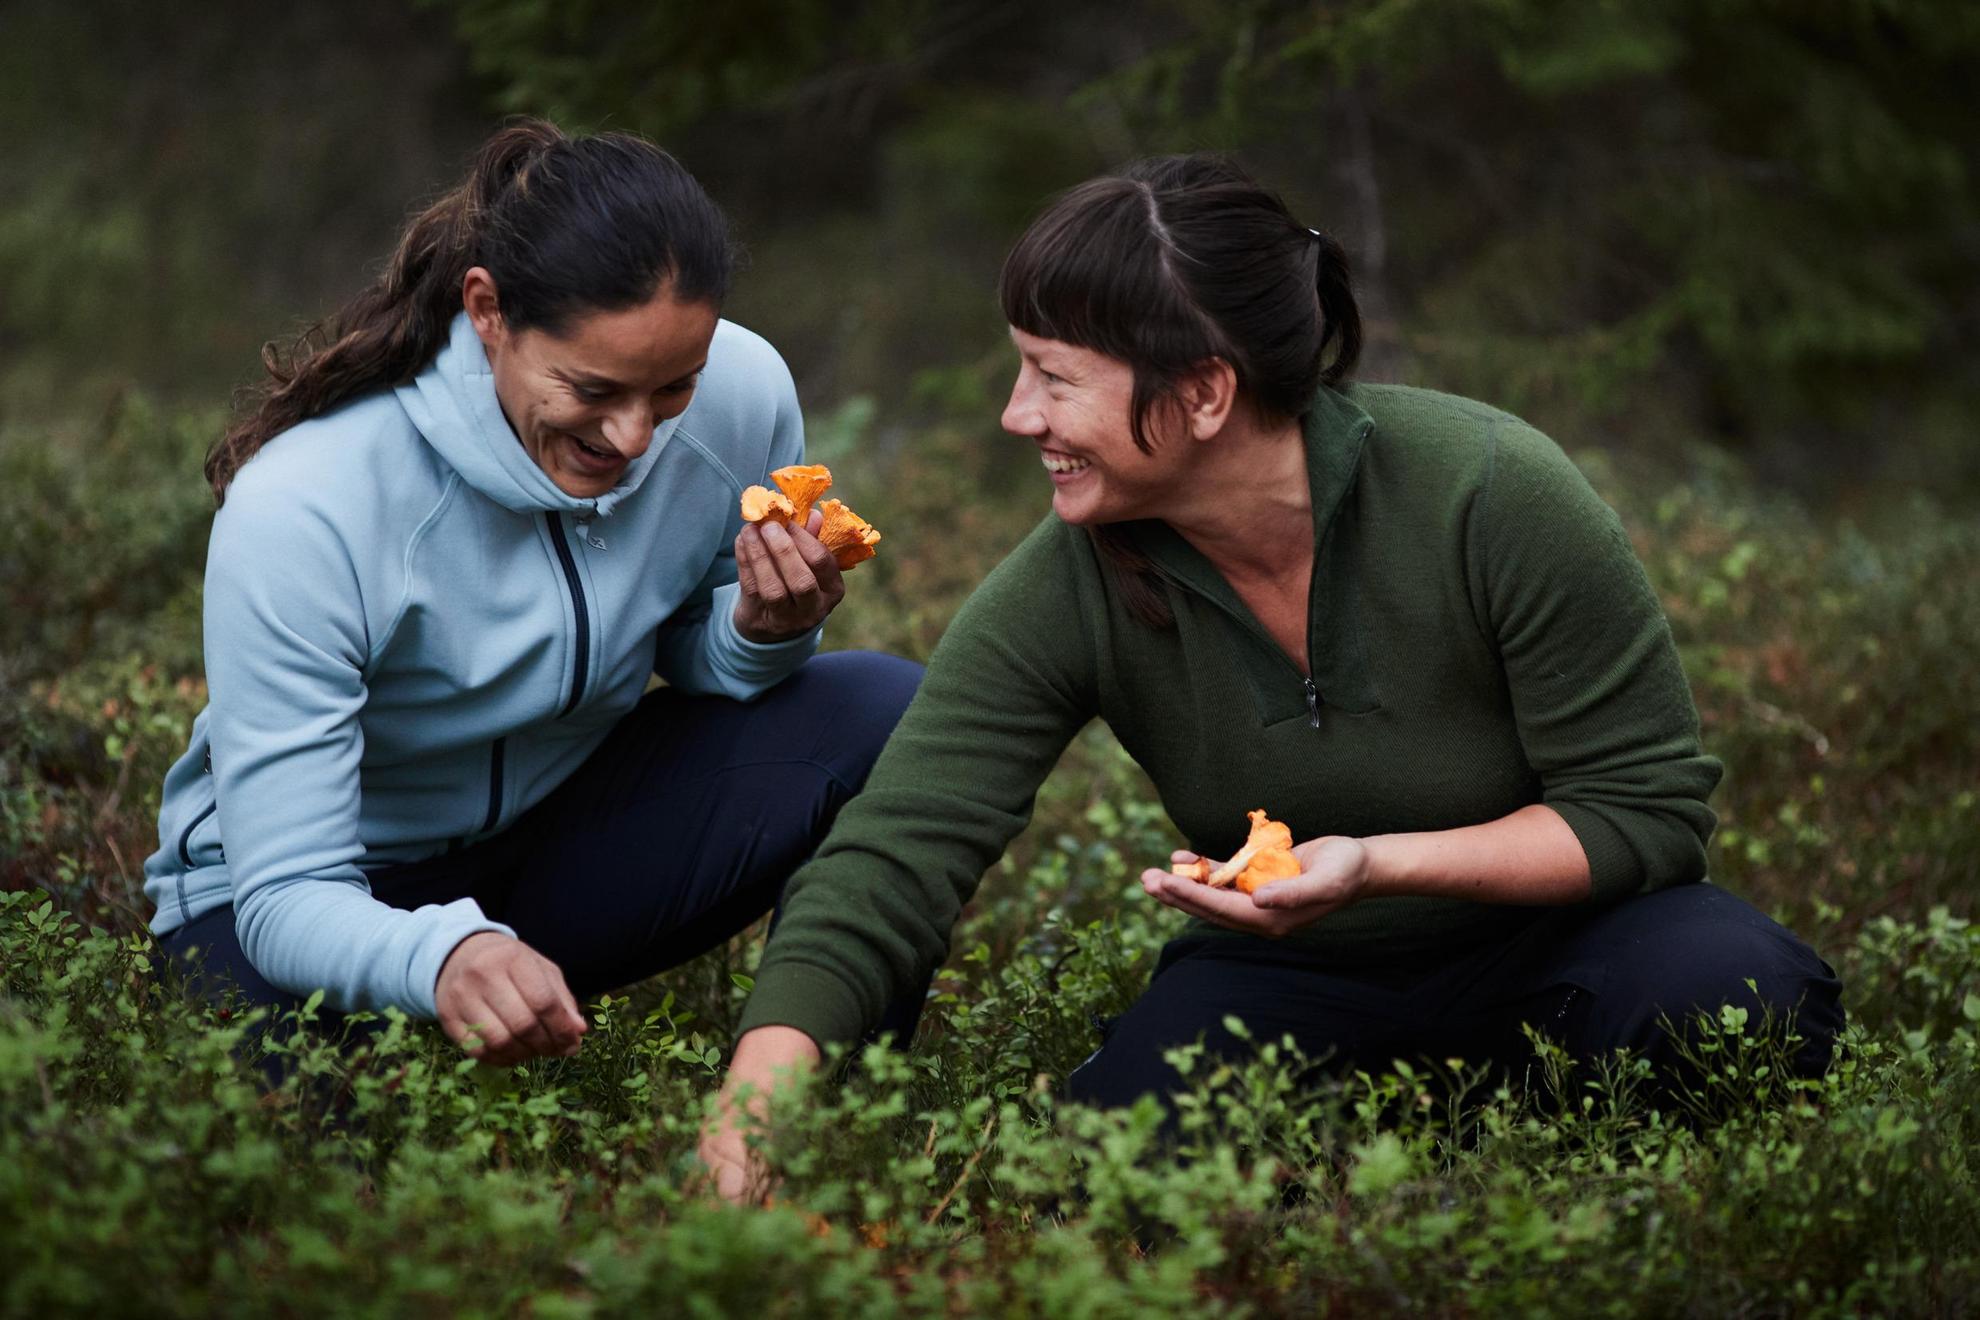 Deux femmes sont accroupies côte à côte dans la forêt en train de ramasser des champignons